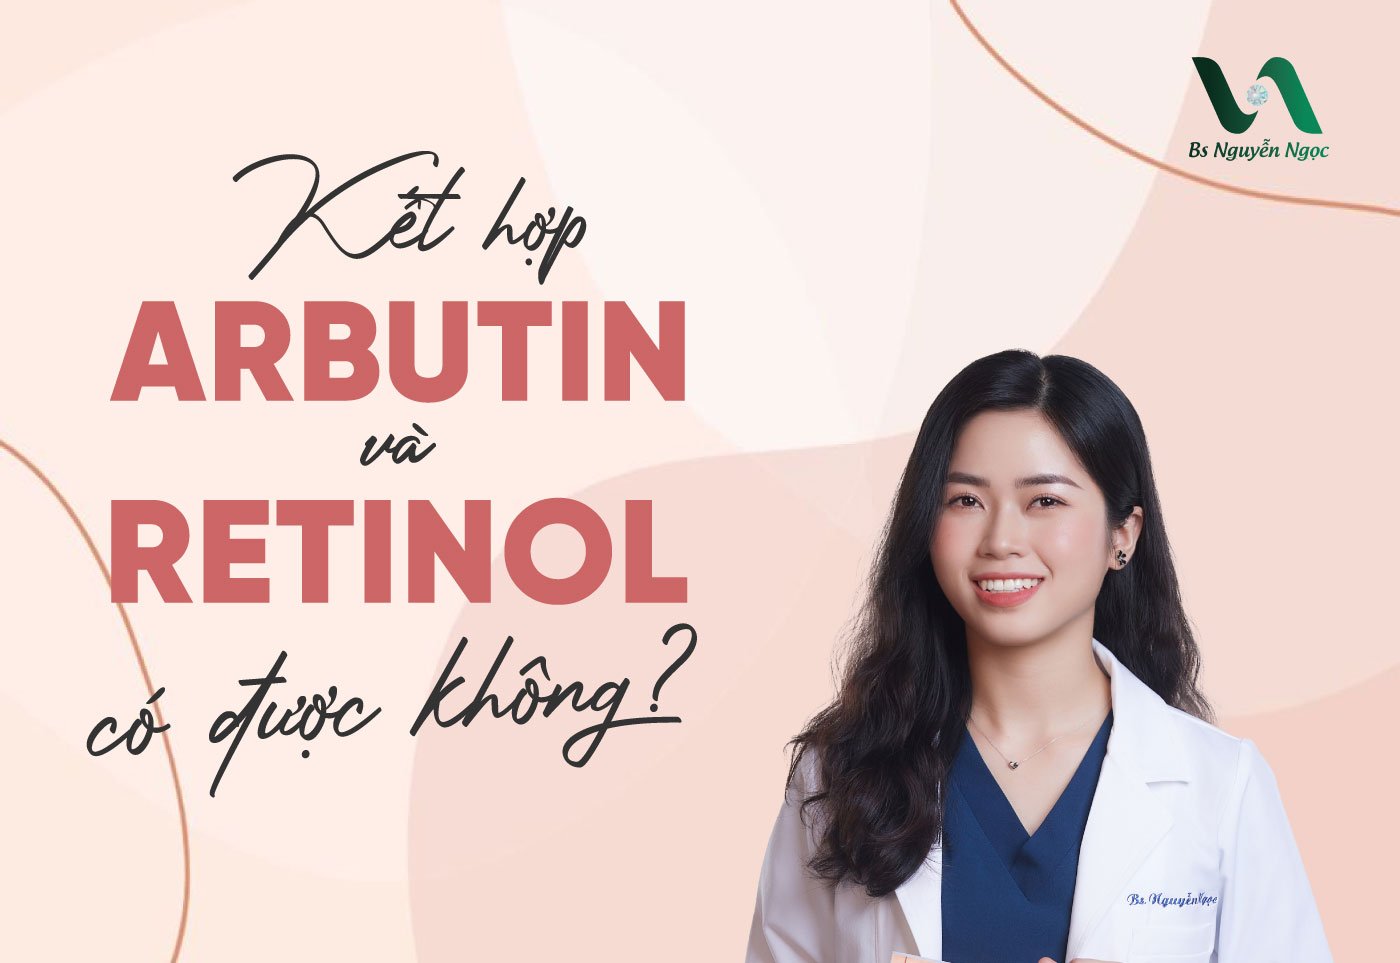 Kết hợp Arbutin và Retinol có được không?